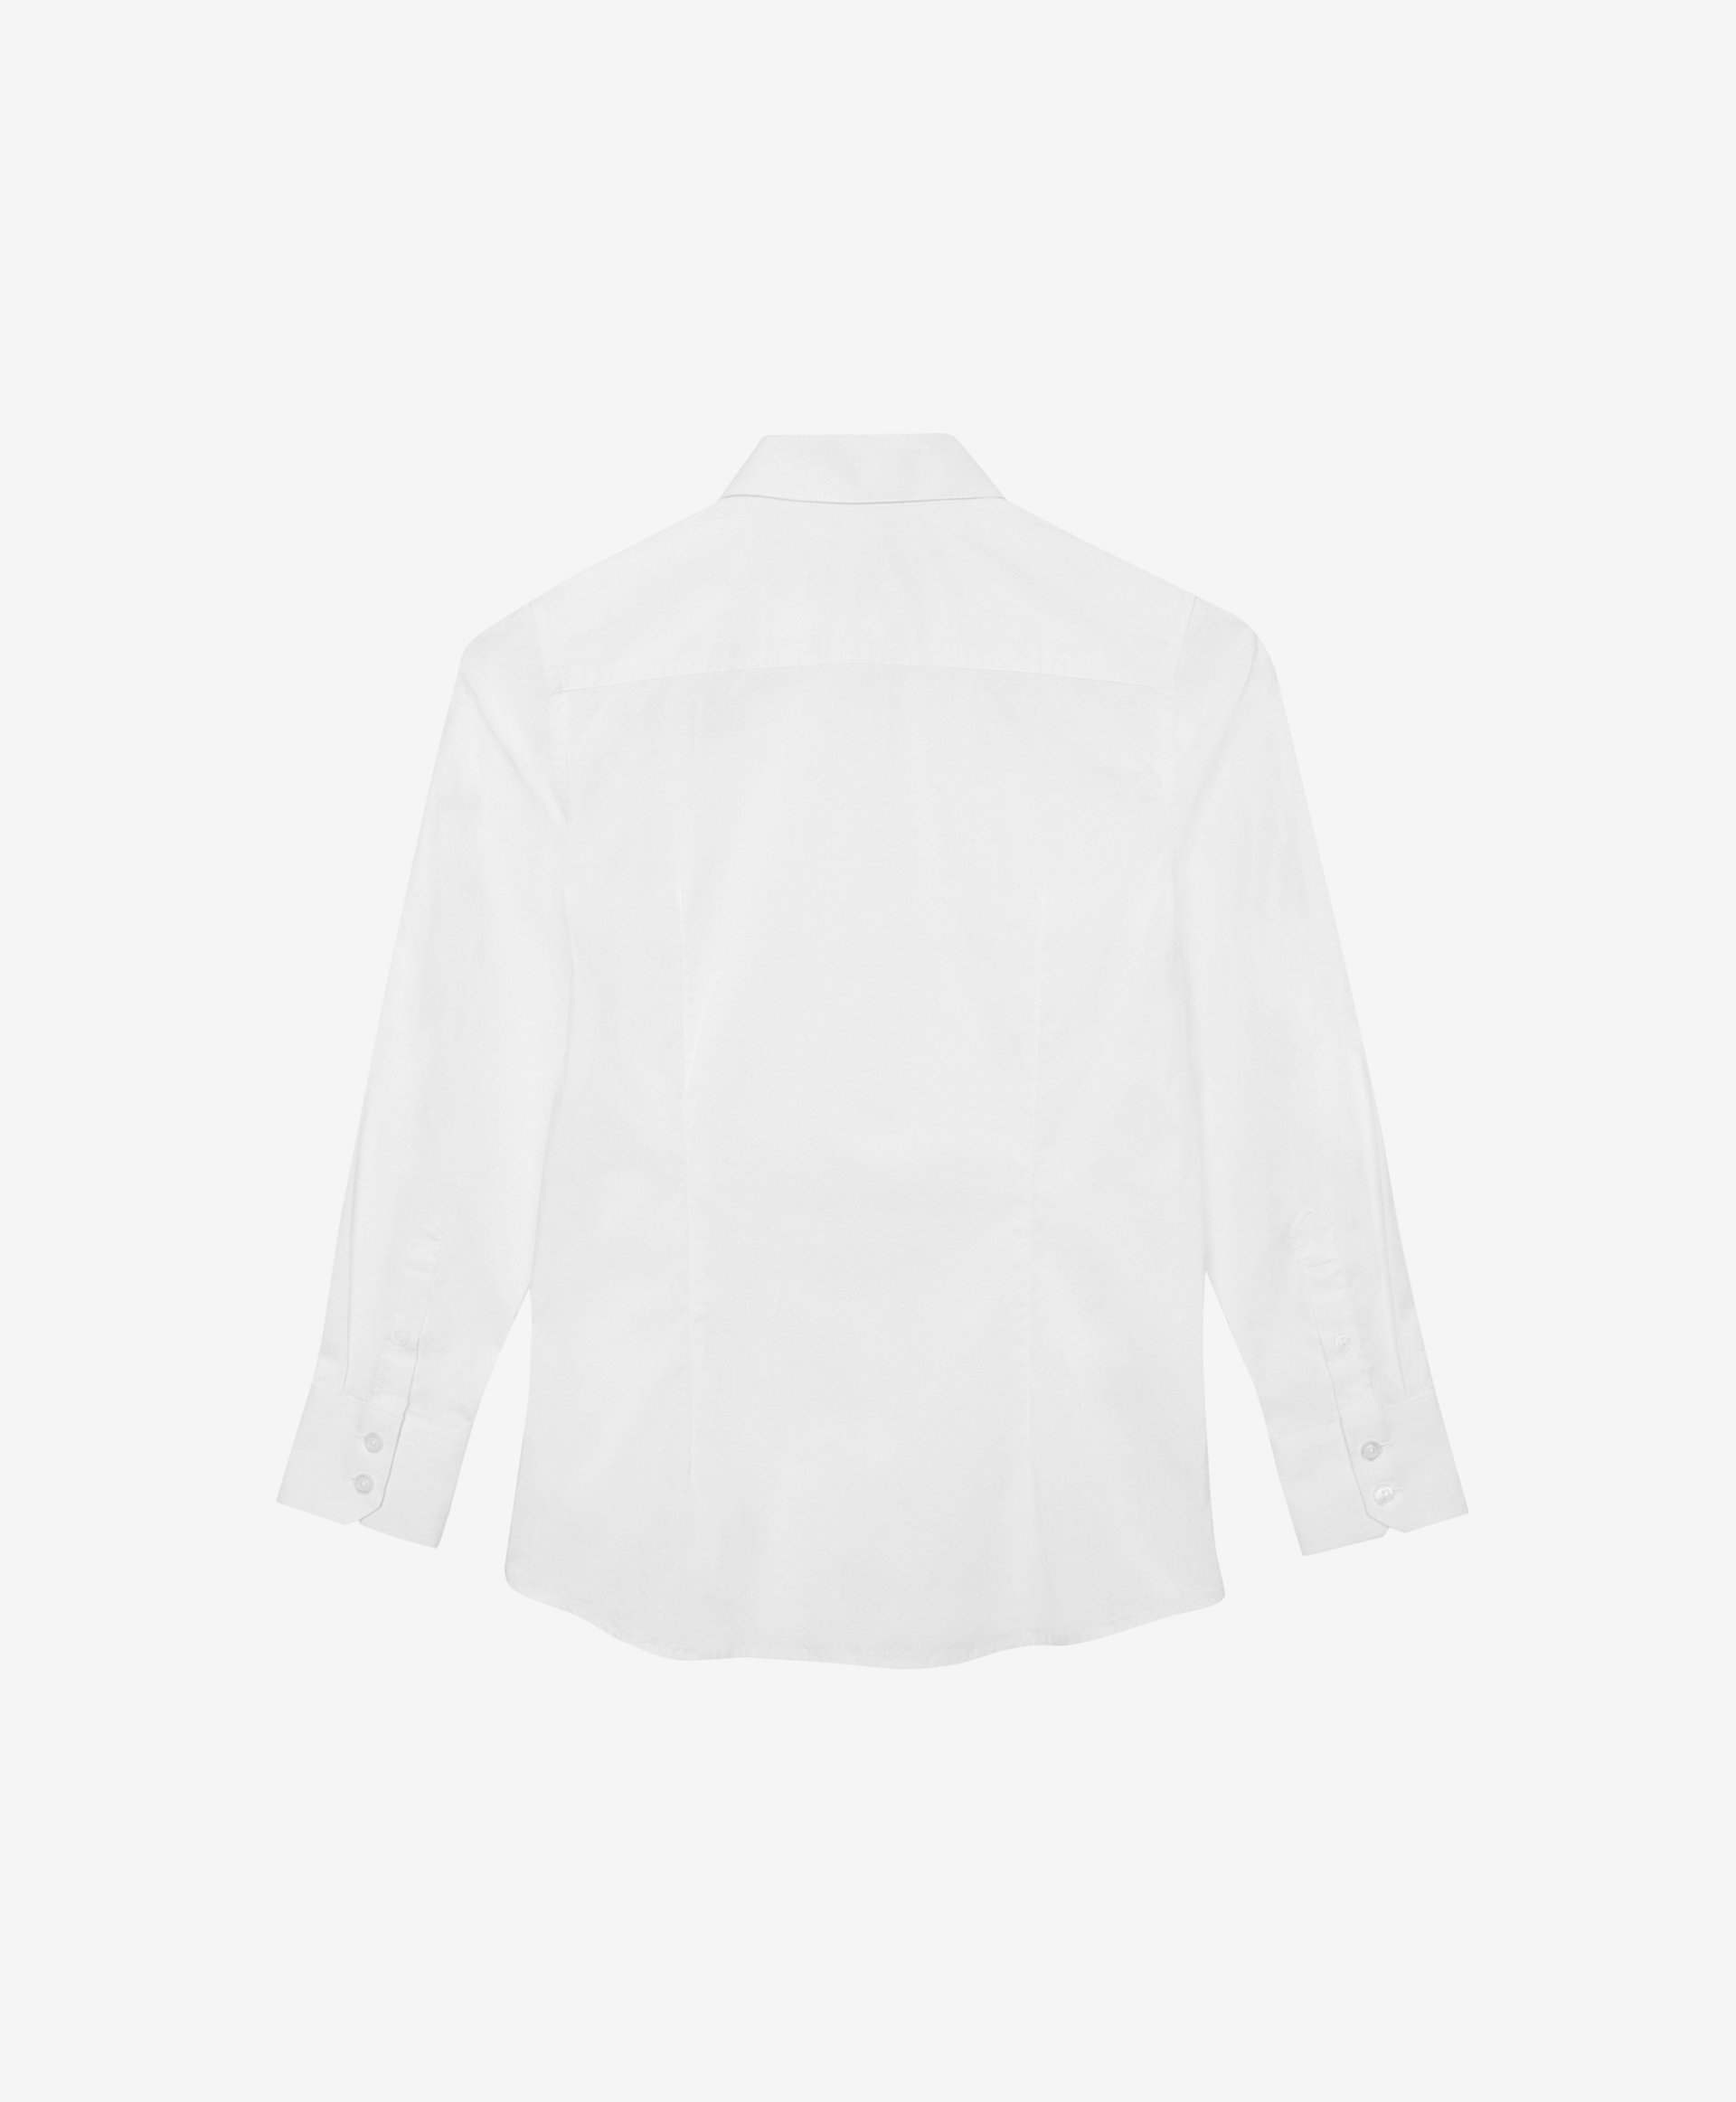 Сорочка белая с длинным рукавом Gulliver 200GSBC2303, размер 164, цвет белый - фото 4